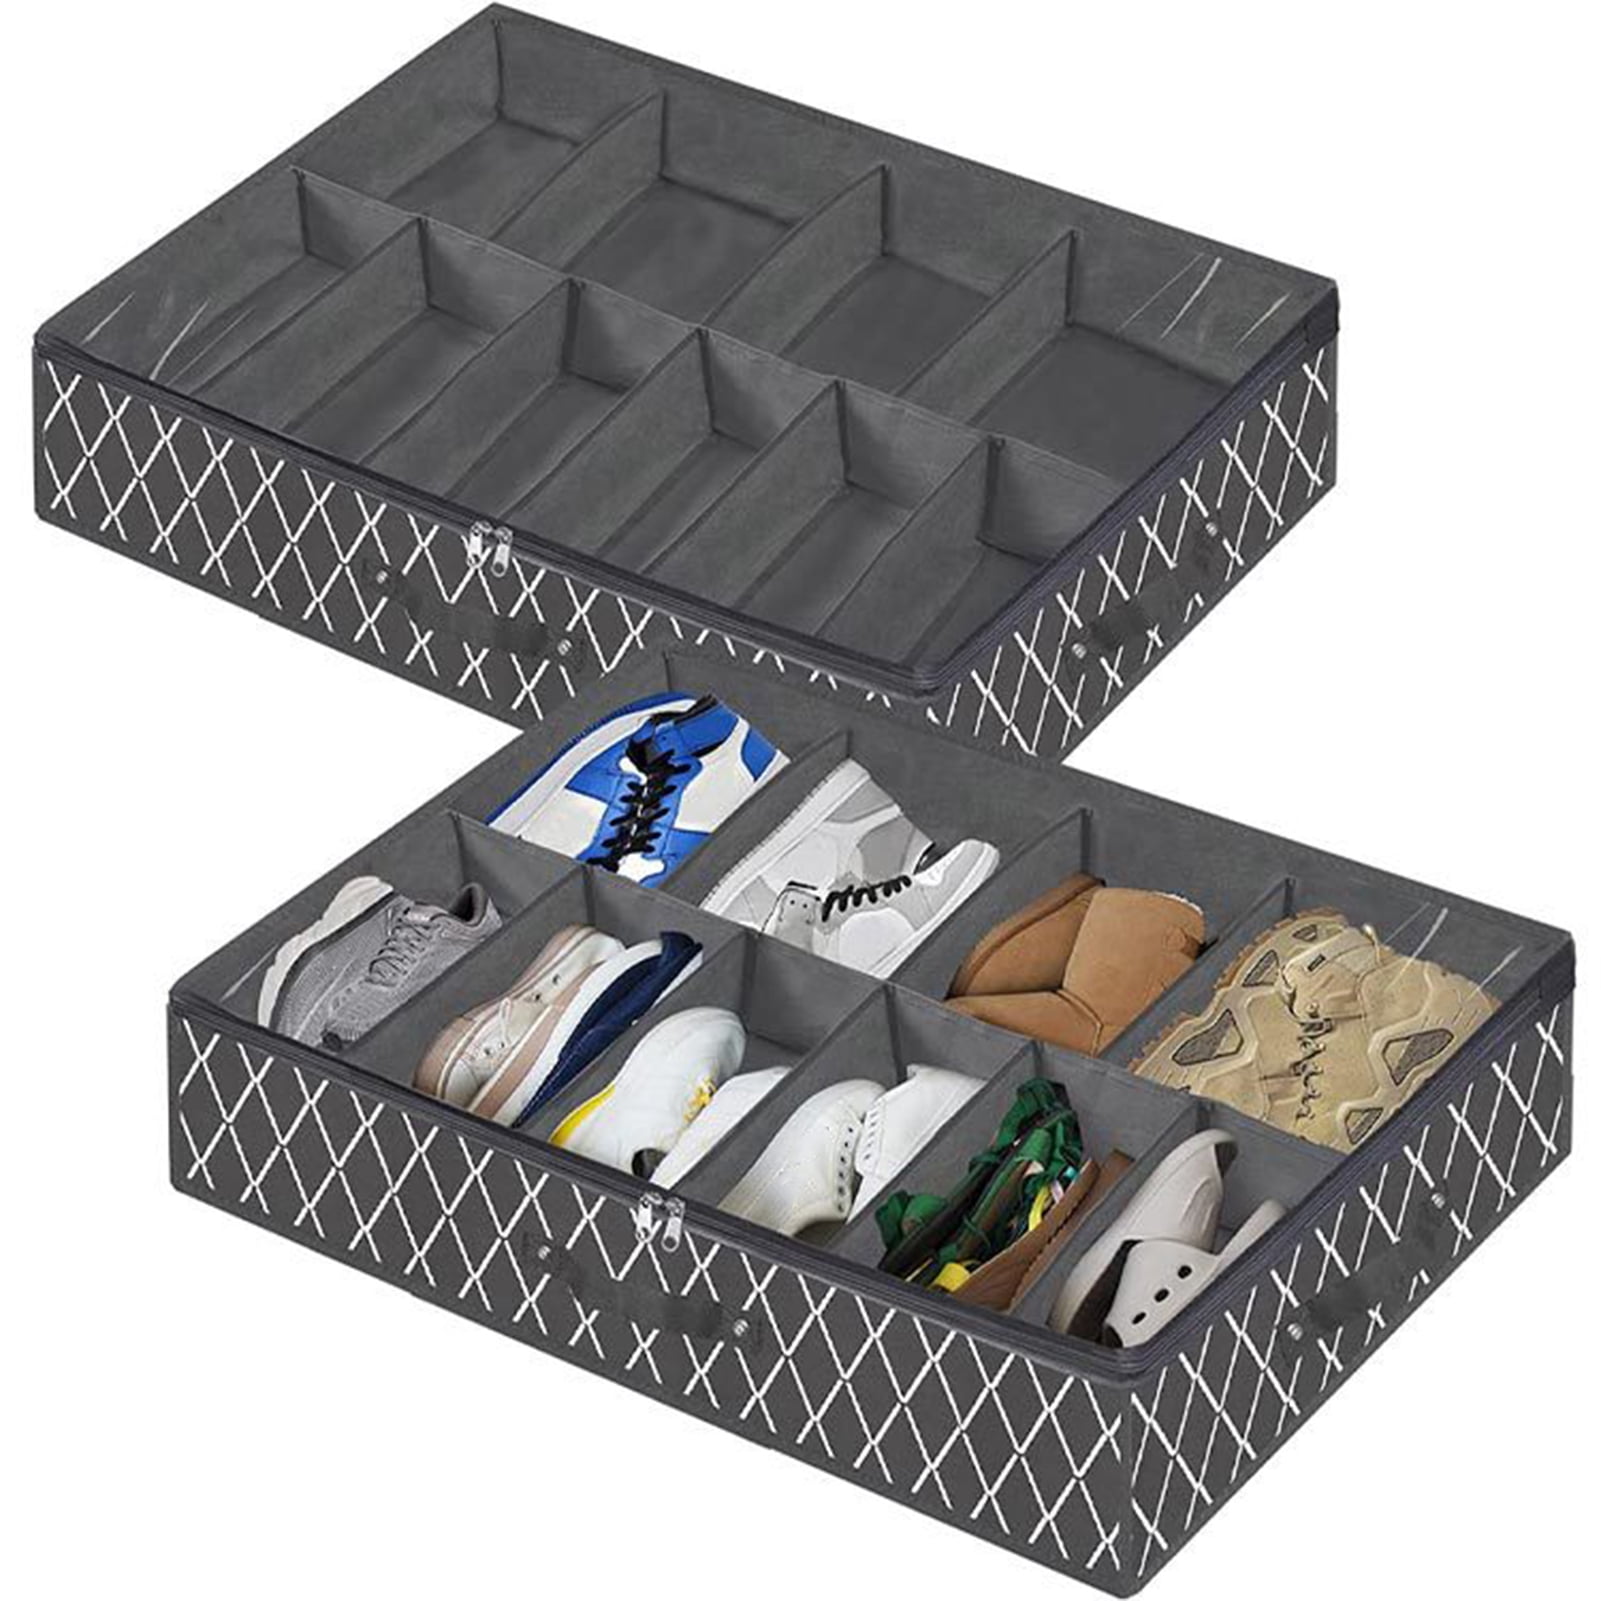 Boot Storage Under Bed